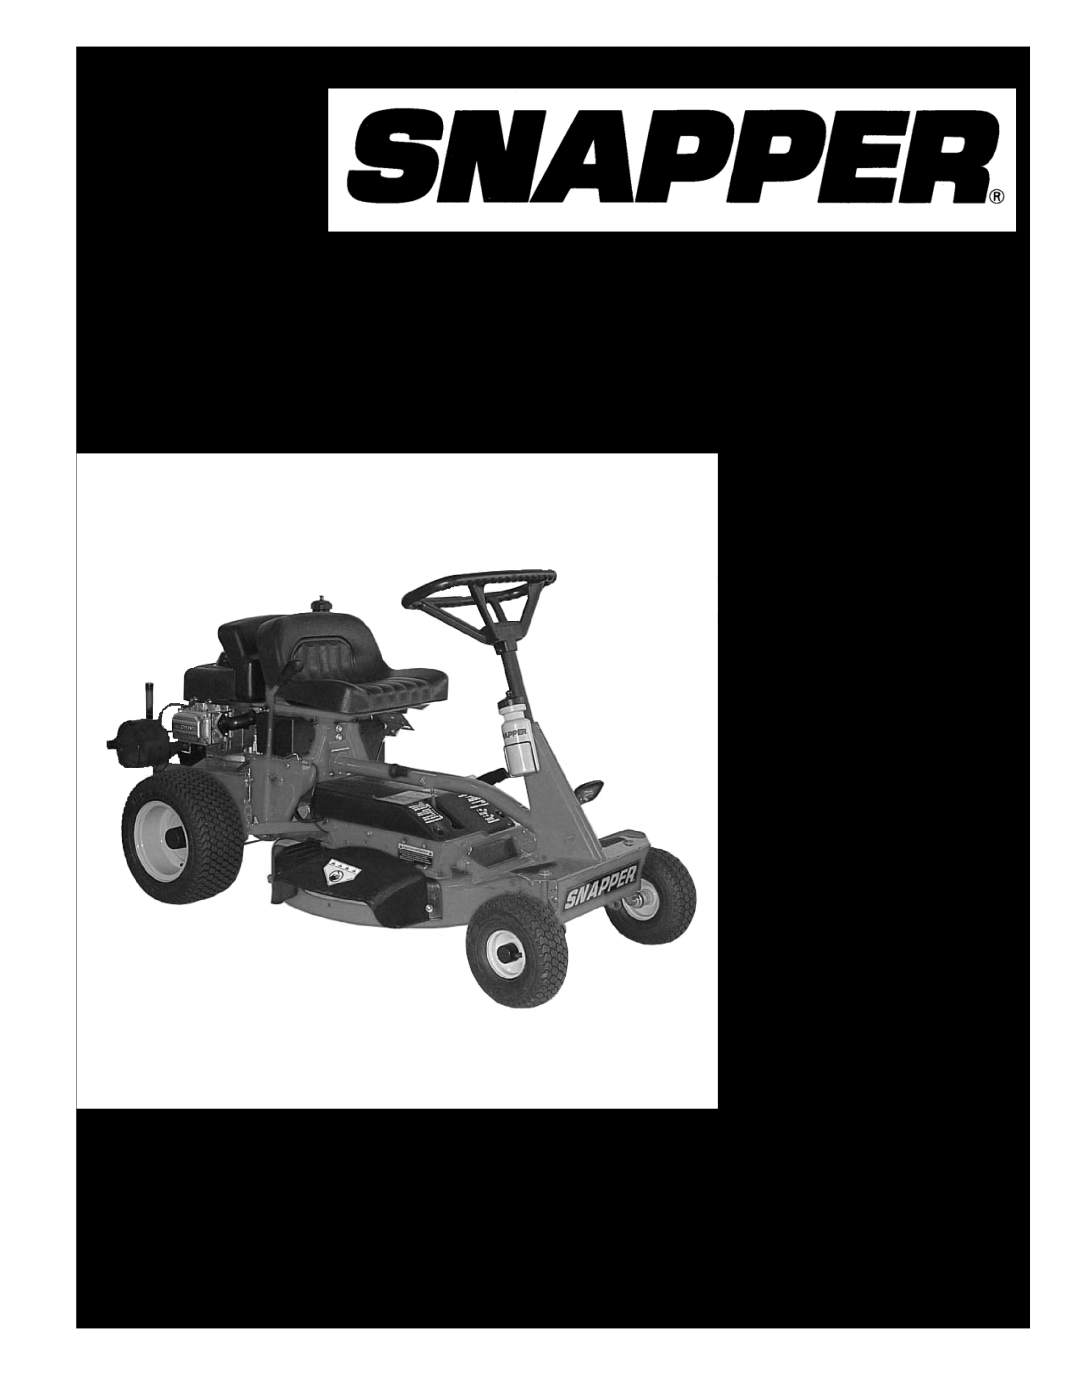 Snapper 84871 manual 28 & 33 Hi-Vac REAR ENGINE RIDER SERIES, Parts Manual for, Description, Reproduction, Manual No 